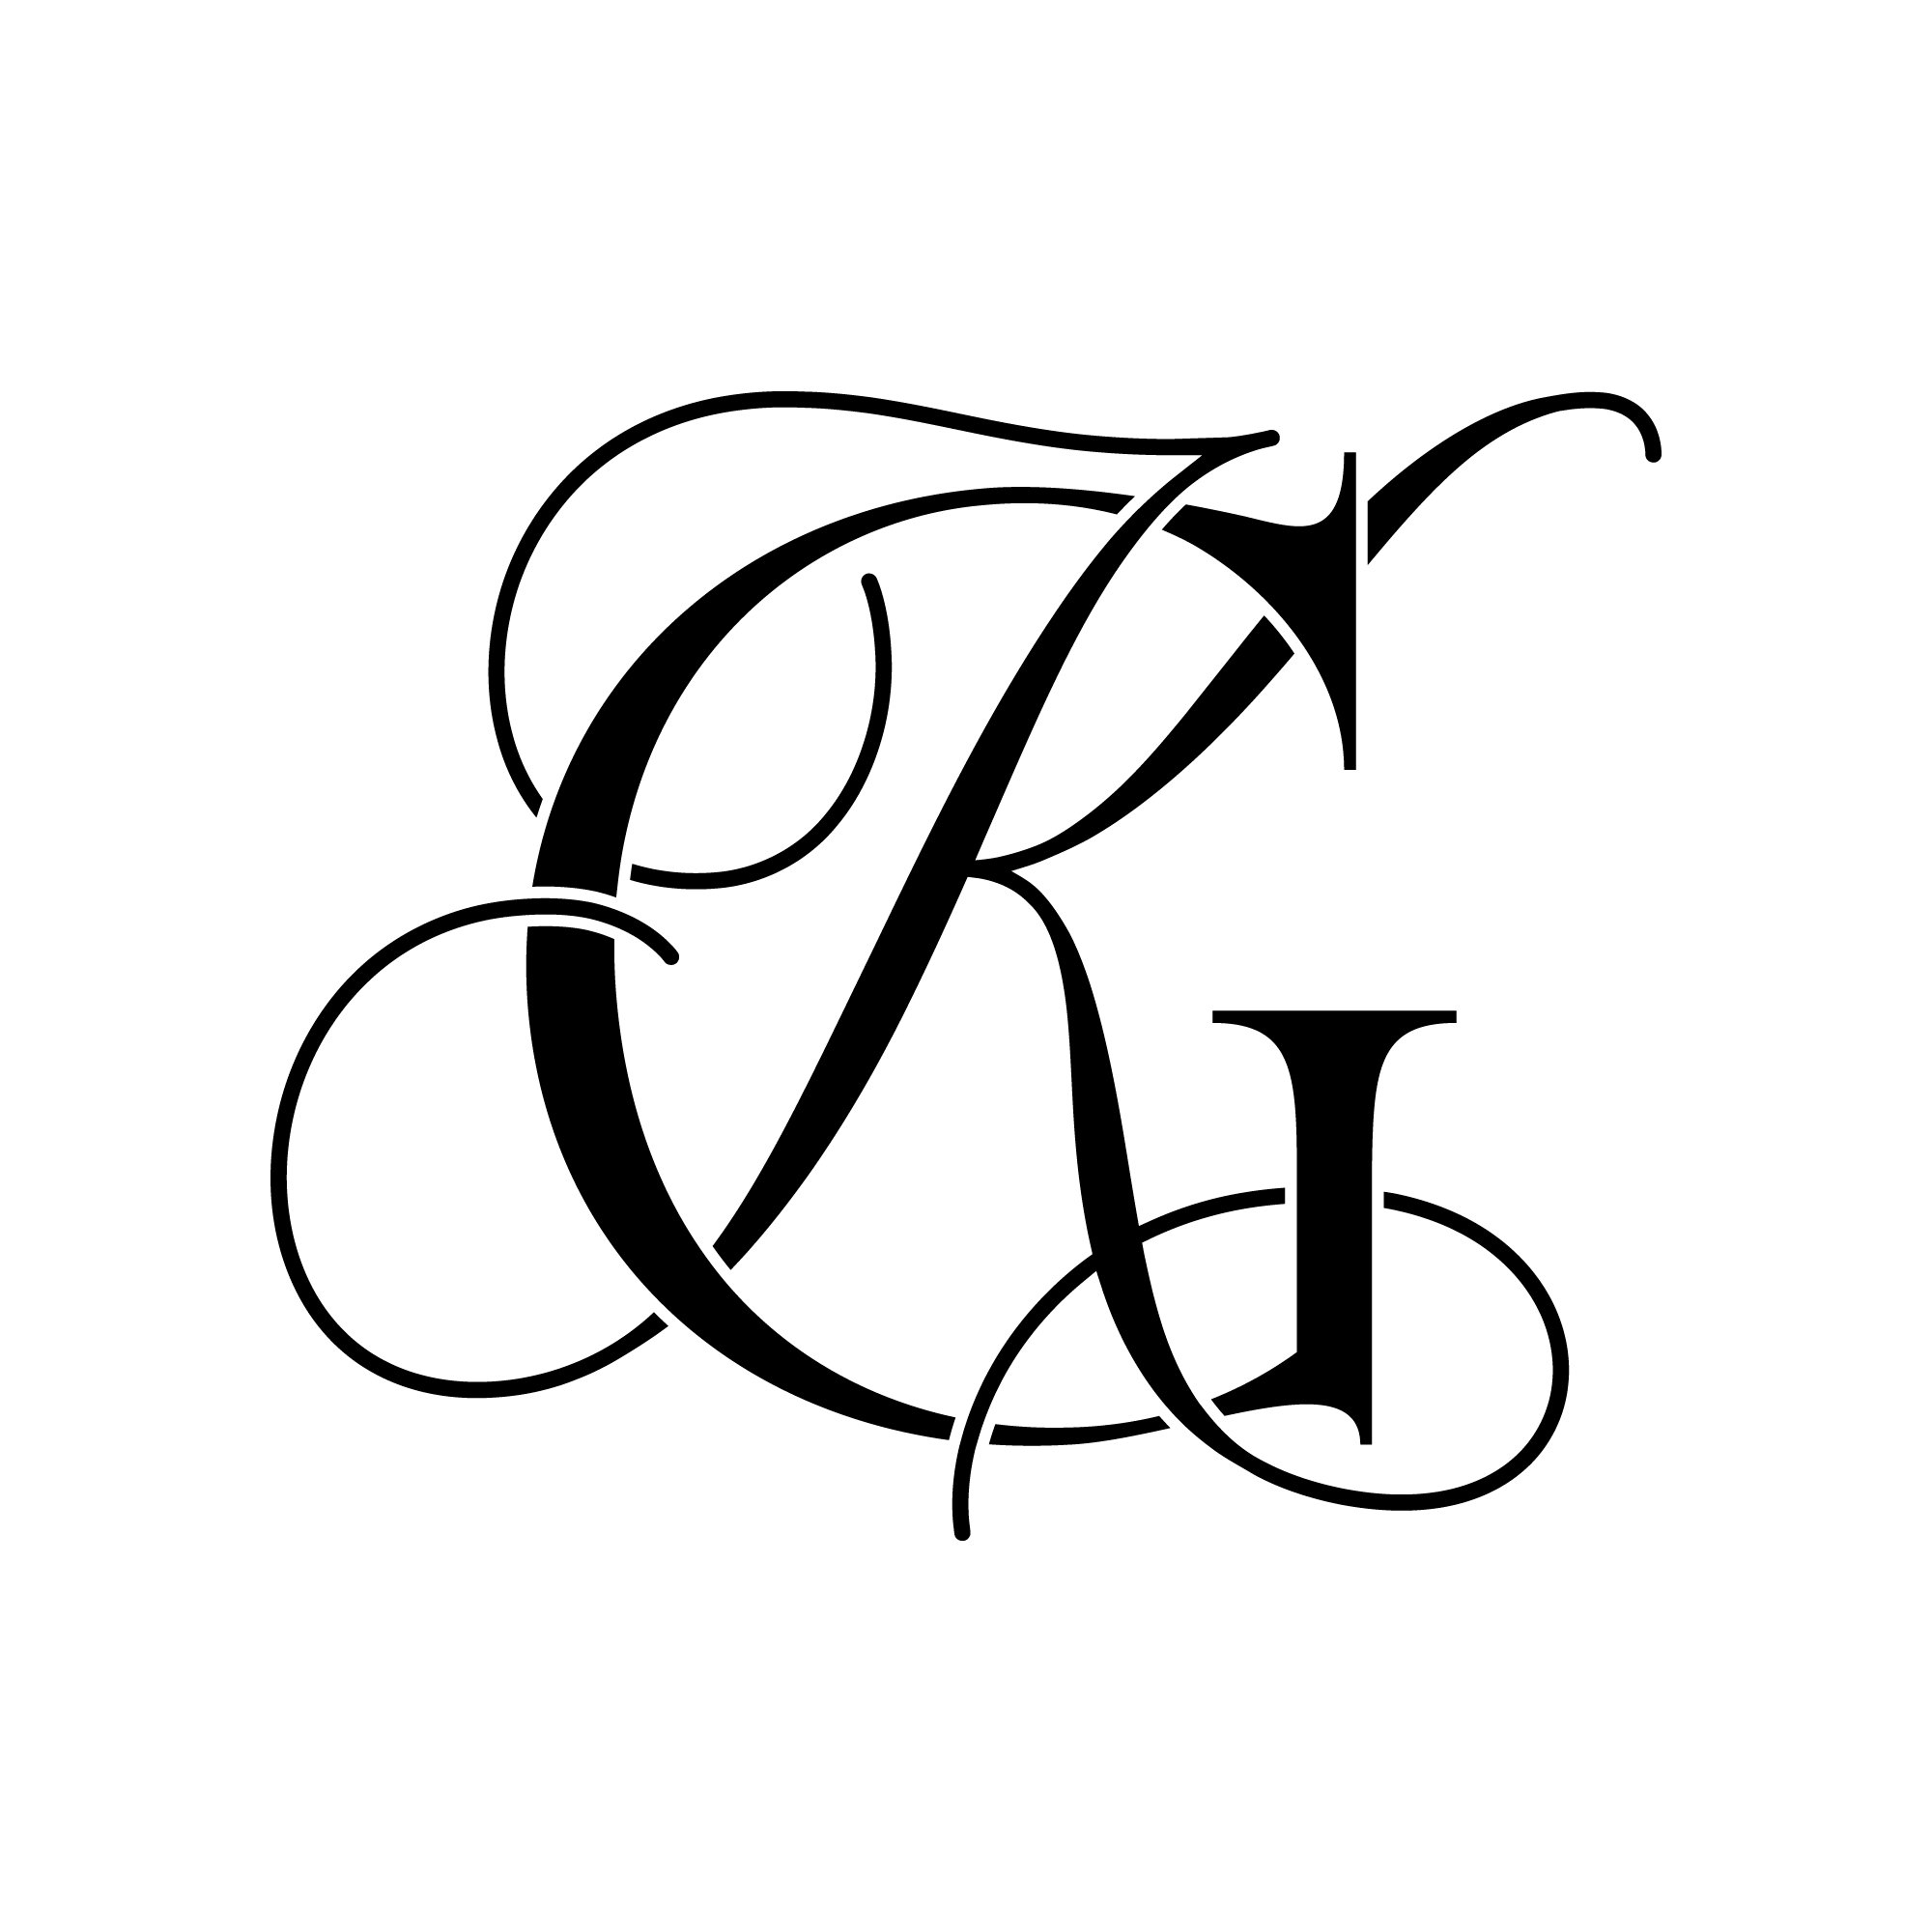 GK Design Logo | Logo design, Branding design logo, Letter logo design